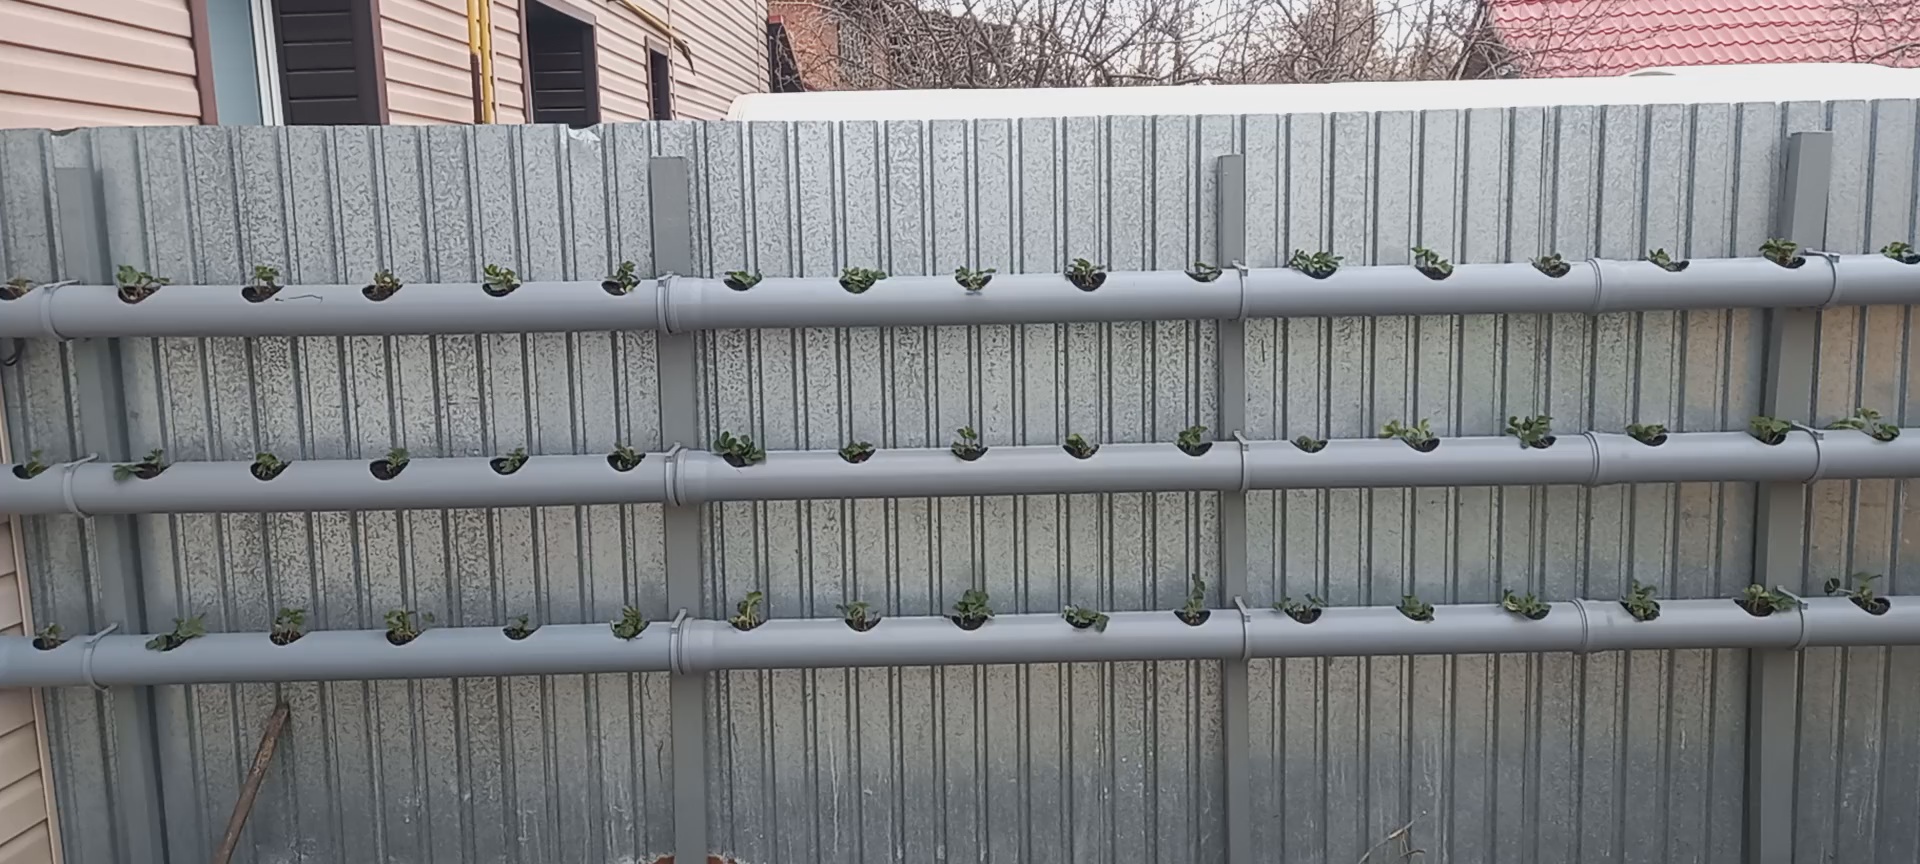 Клубника в трубах на заборе – как посадить и выращивать ???